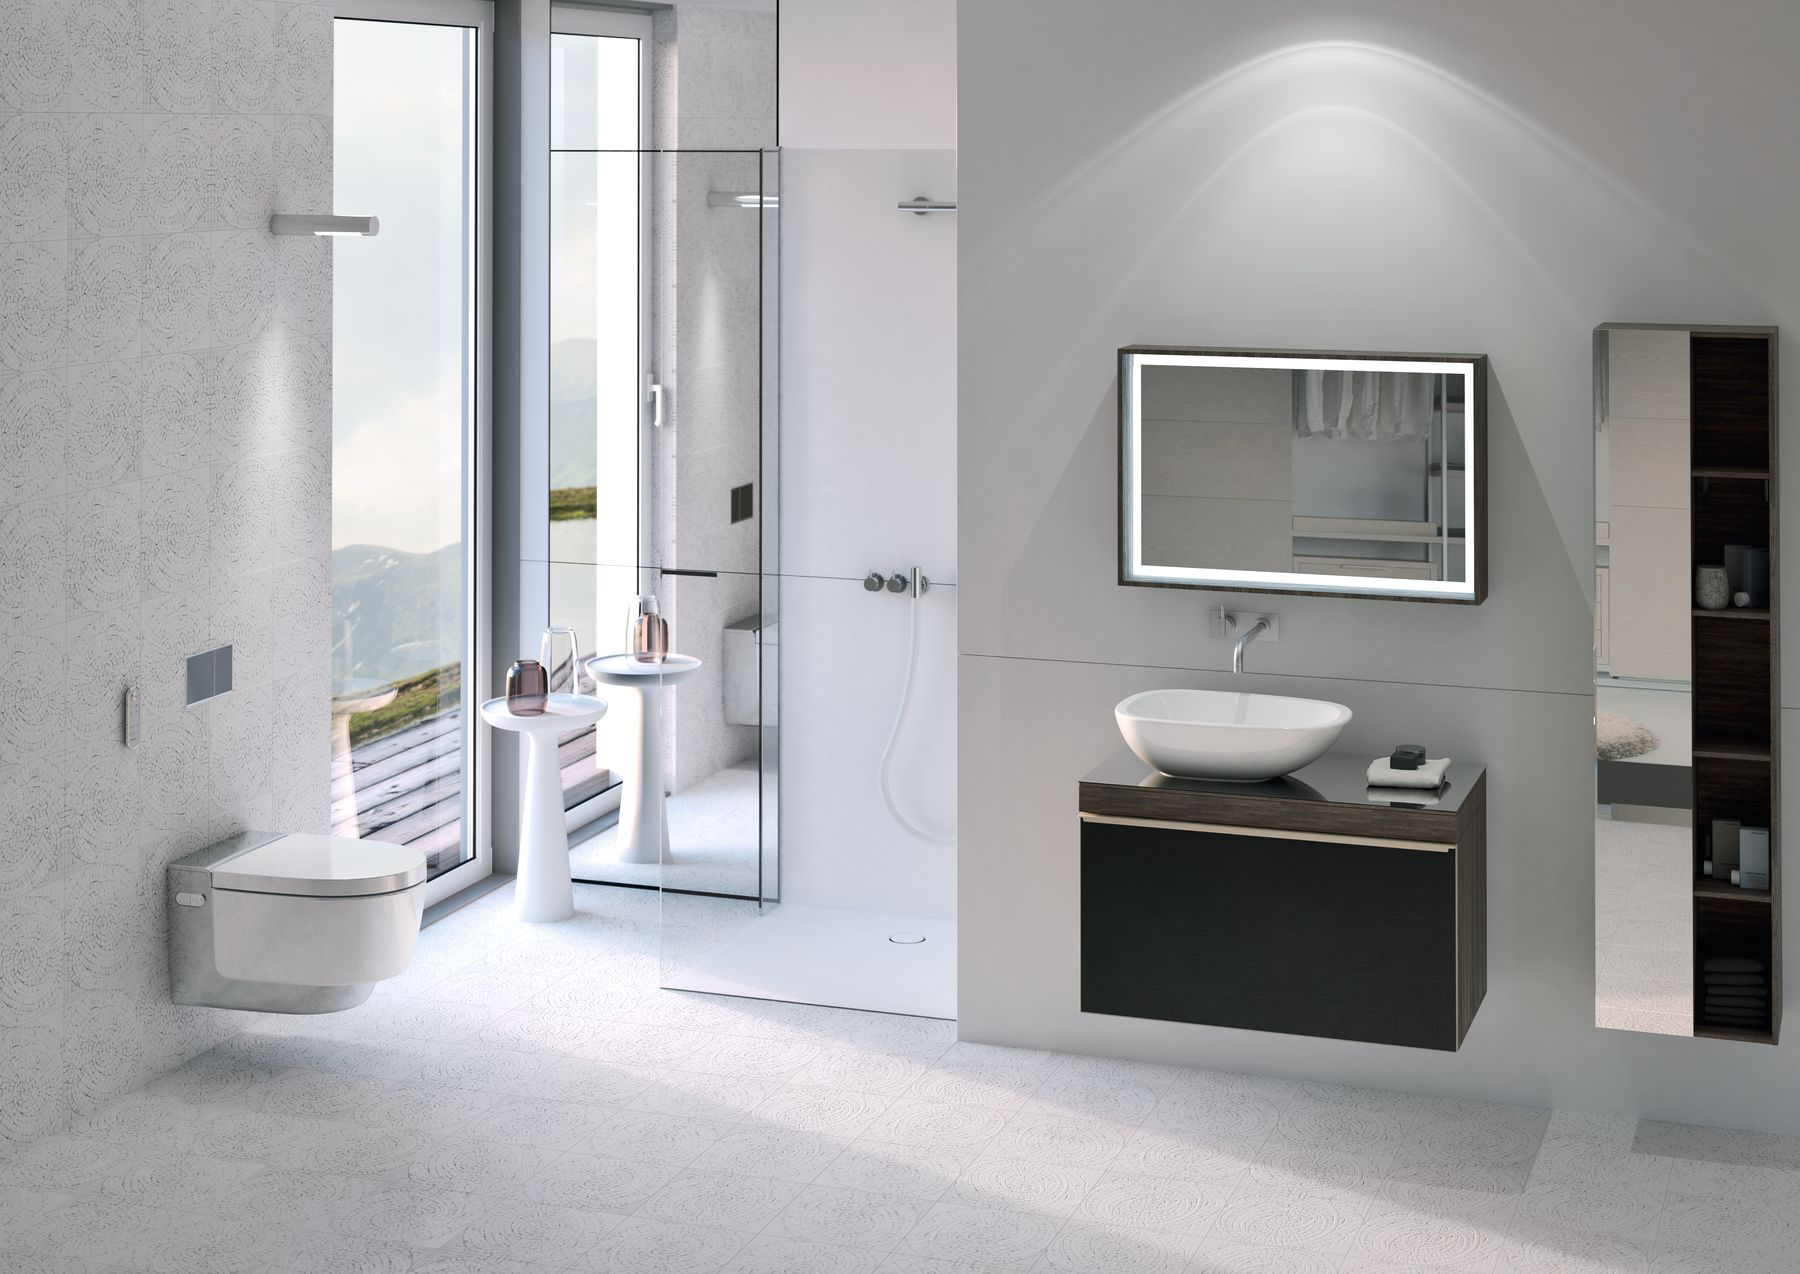 Badkamer met toilet Aquaclean Mera Classic douchewc met een uiterst effectieve, geluidsarme luchtzuivering, een intelligente warmeluchtföhn en een gebruiksvriendelijke afstandsbediening, waarmee je de verschillende functies intuïtief en naar eigen voorkeur kunt bedienen.